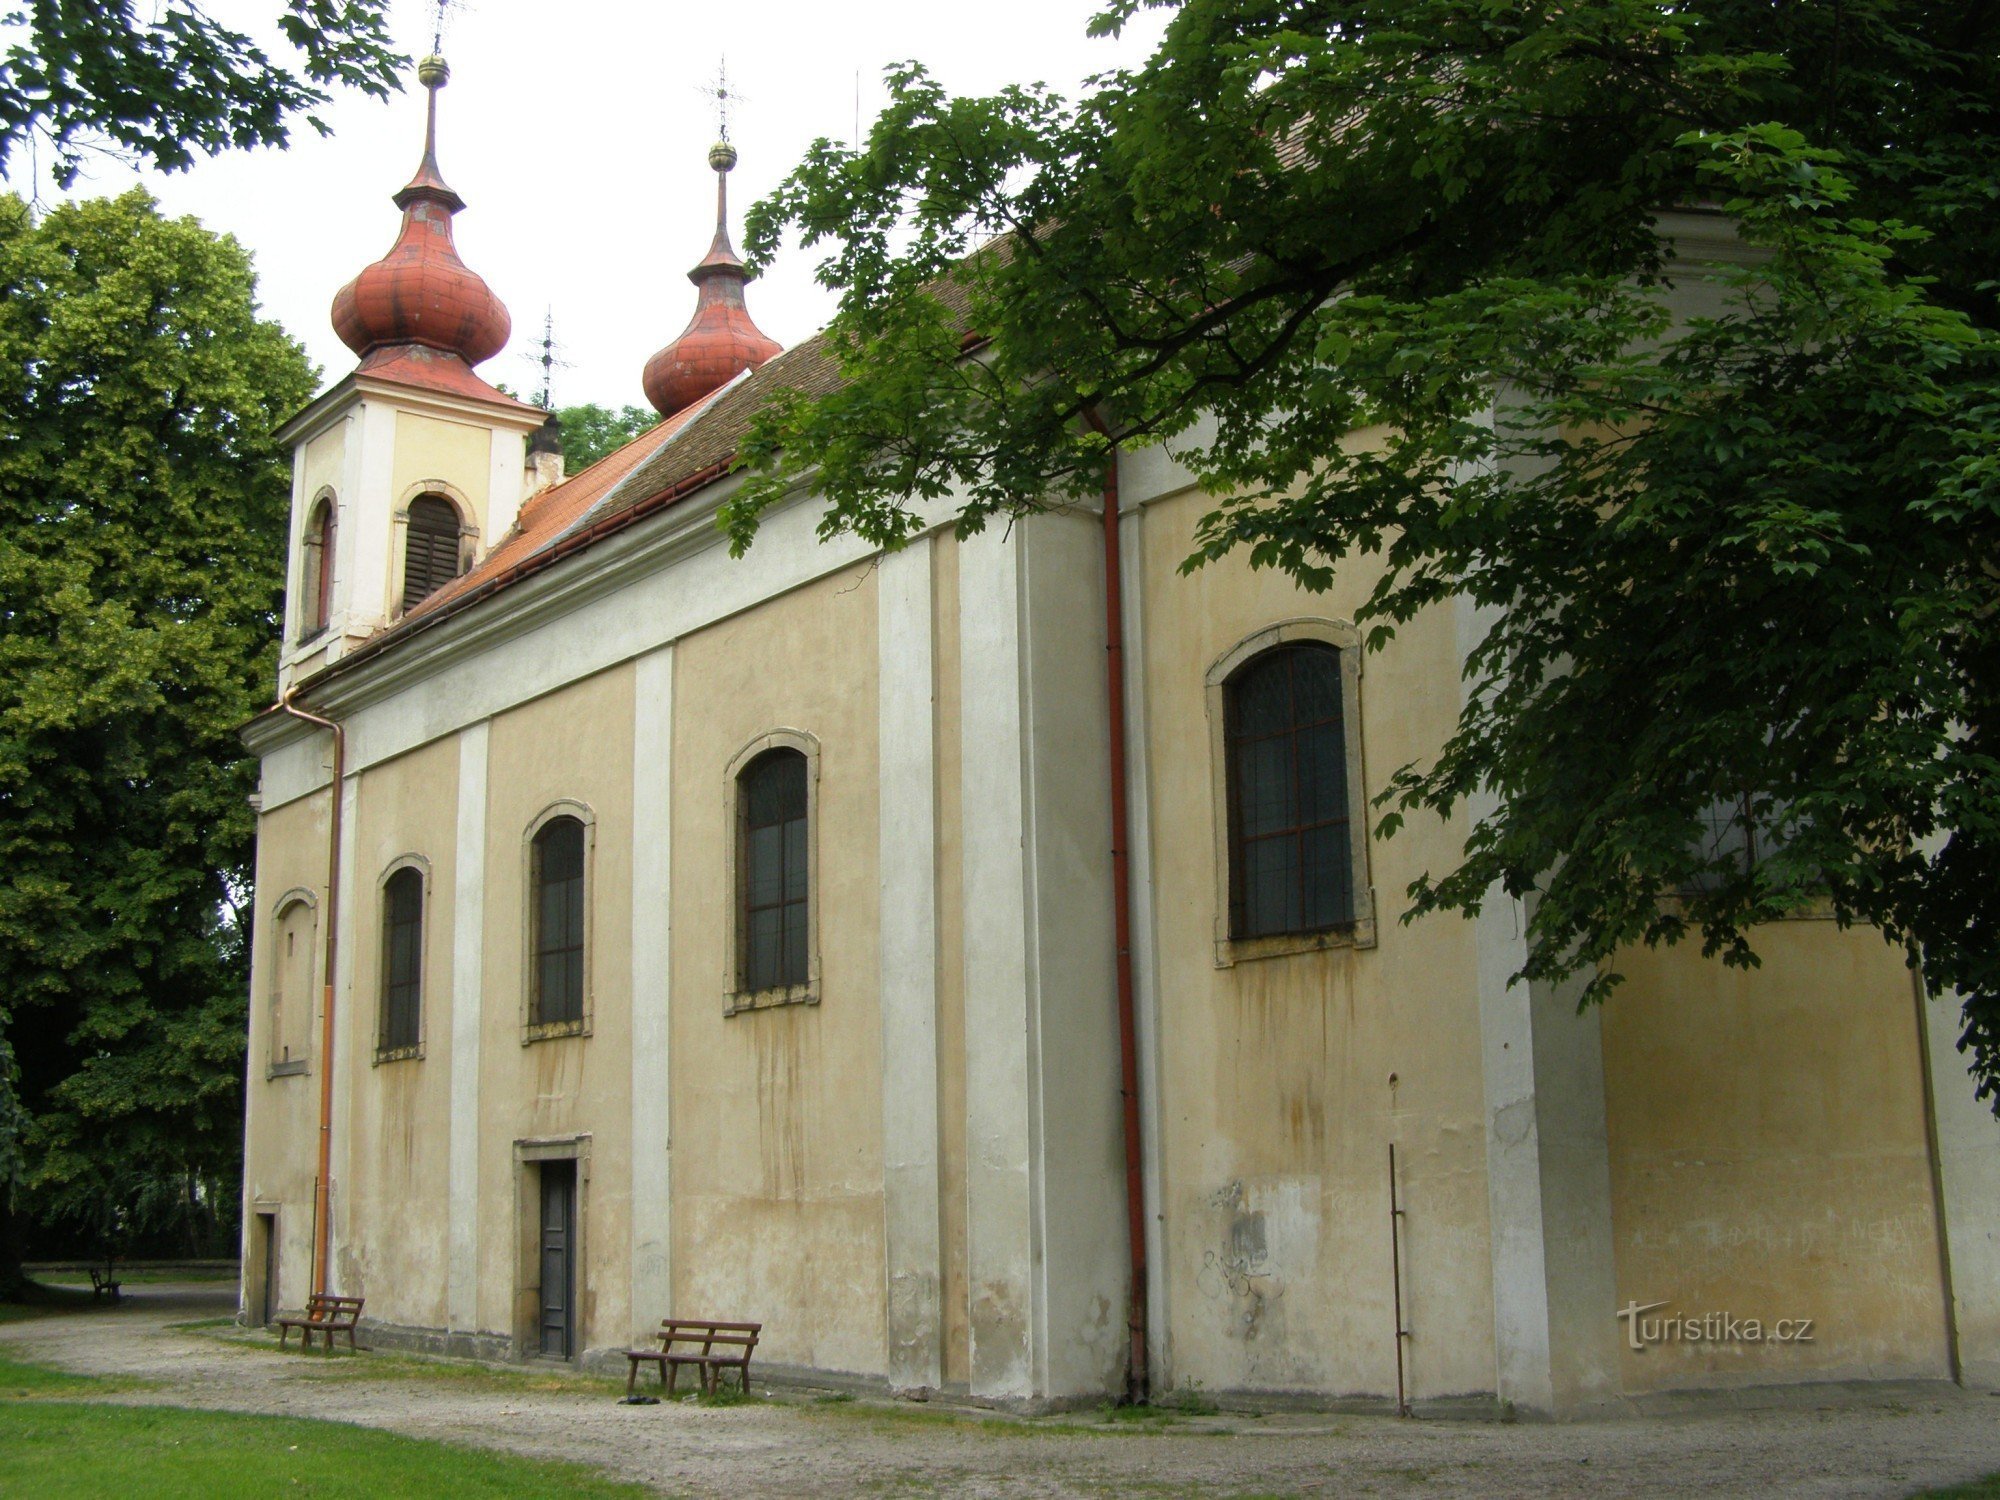 Nový Bydžov - Igreja da Santíssima Trindade